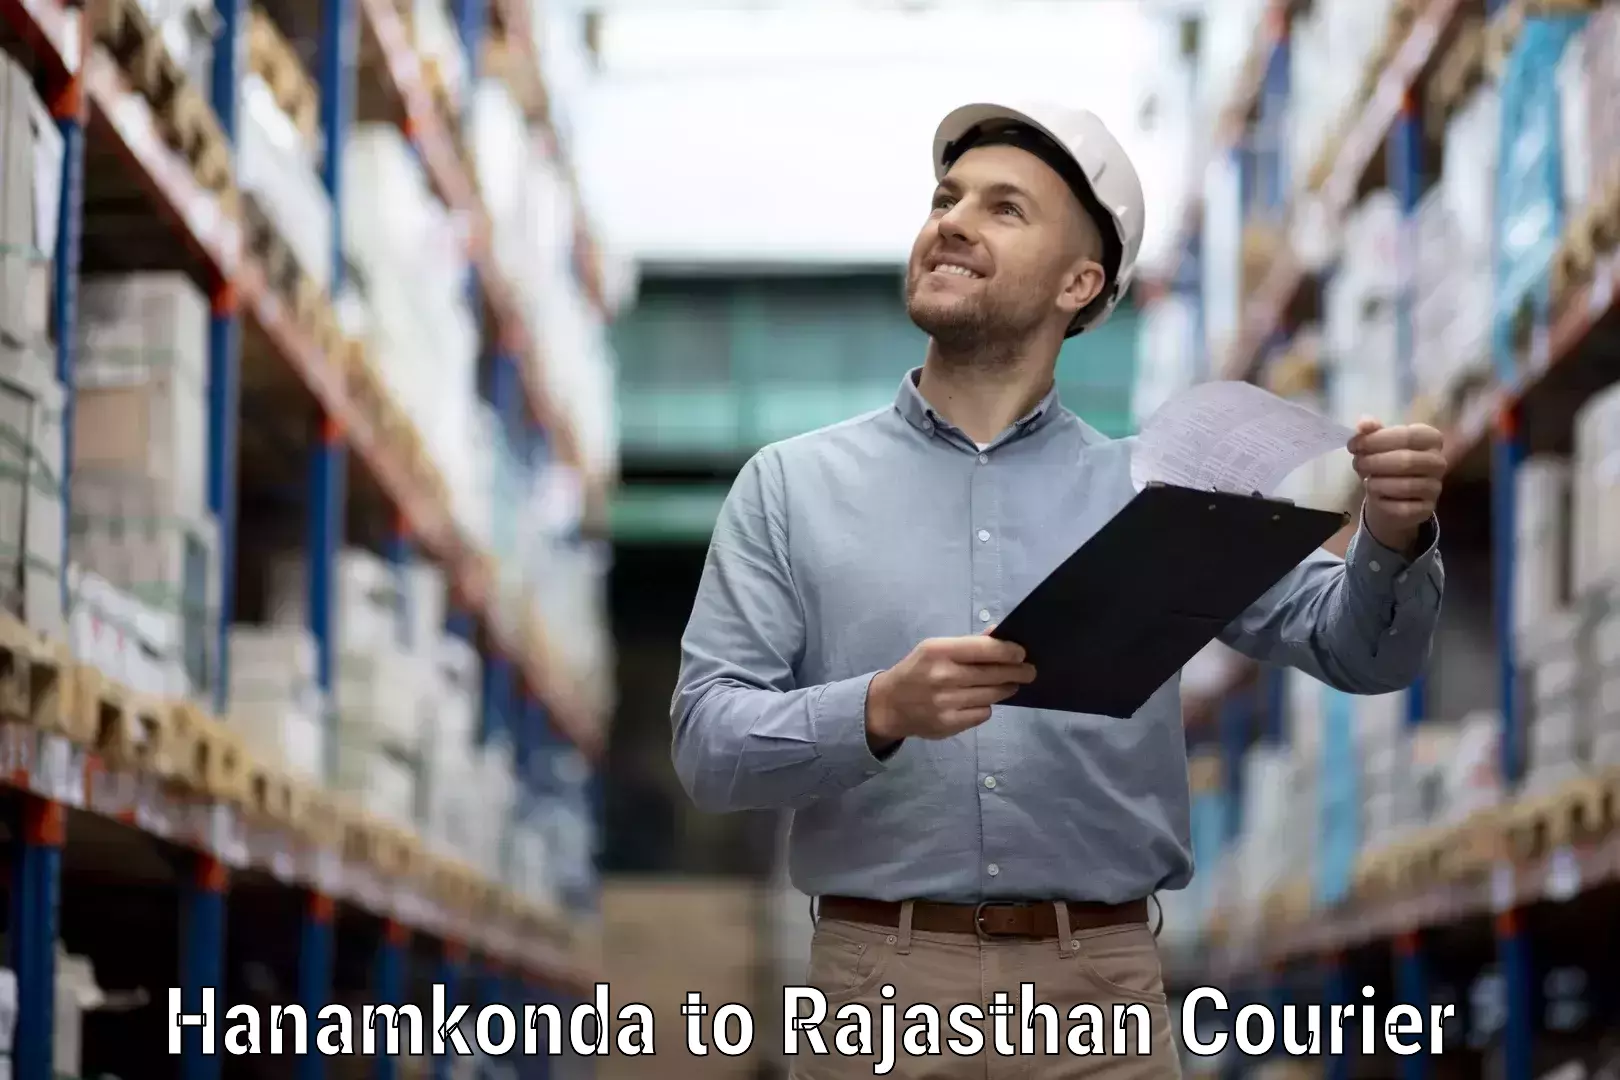 Courier service comparison Hanamkonda to Hanumangarh